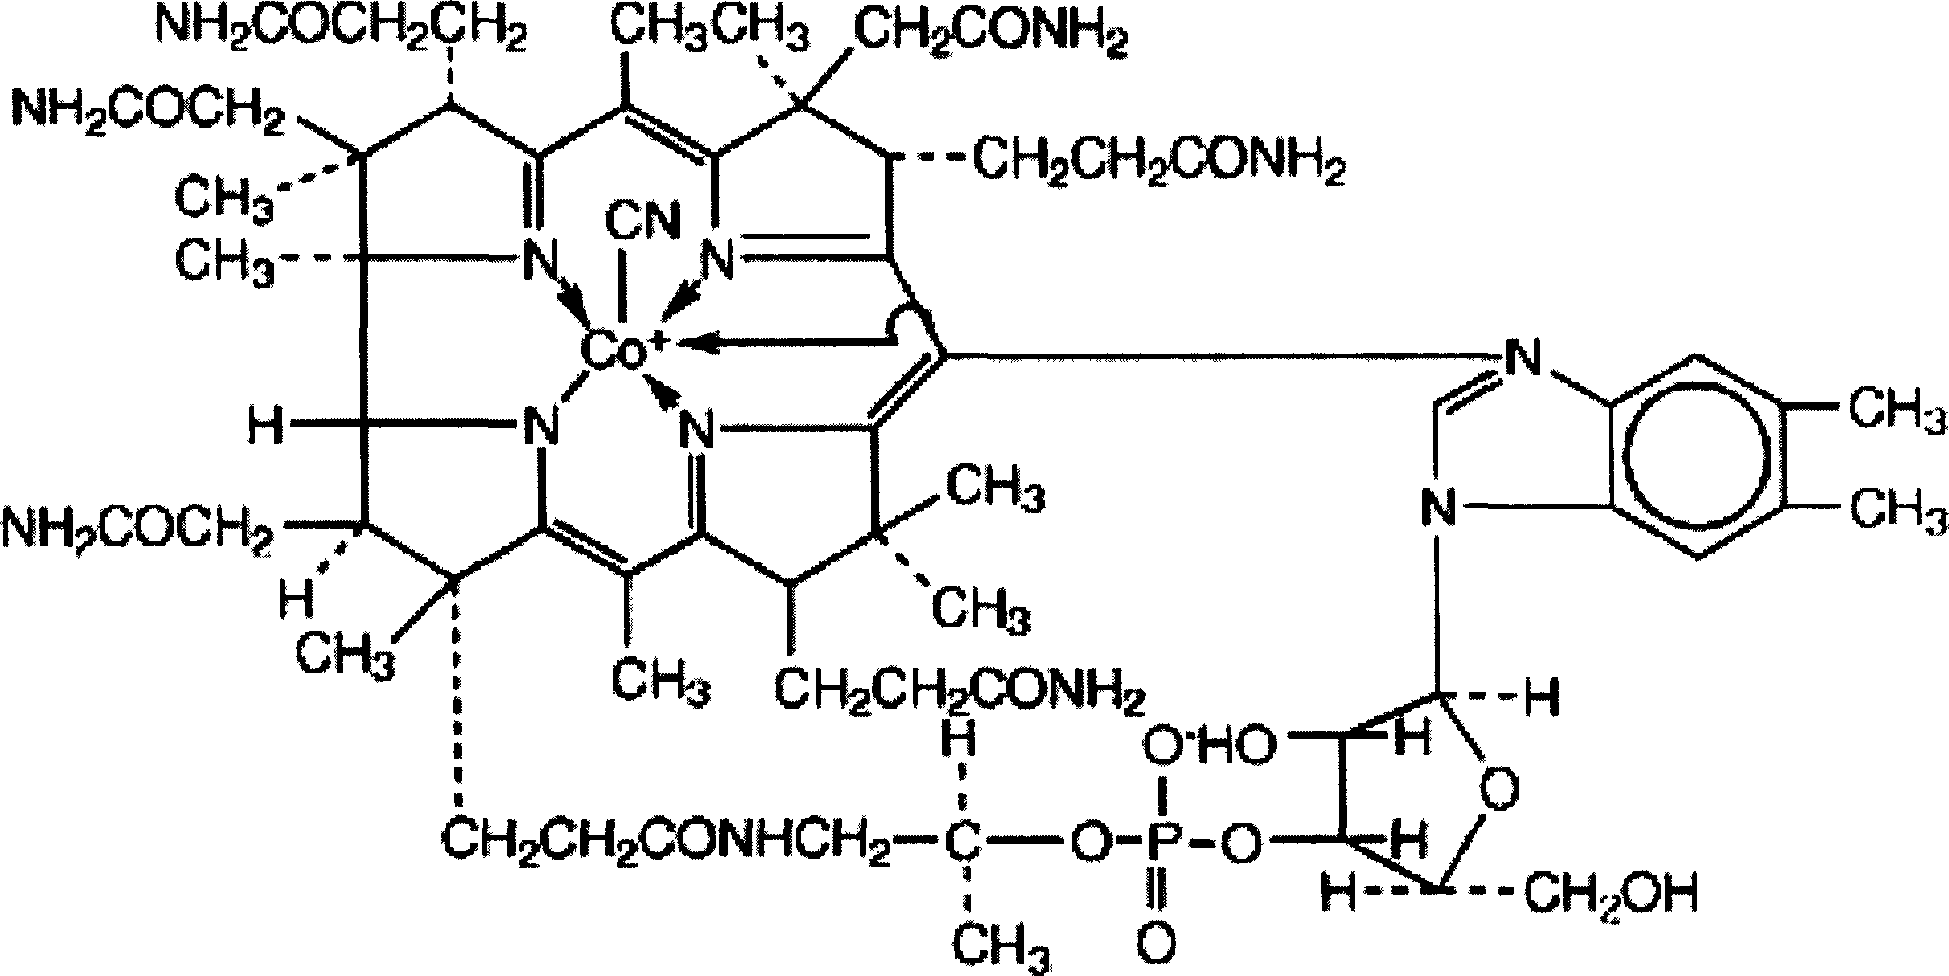 Collunarium containing vitamin B12